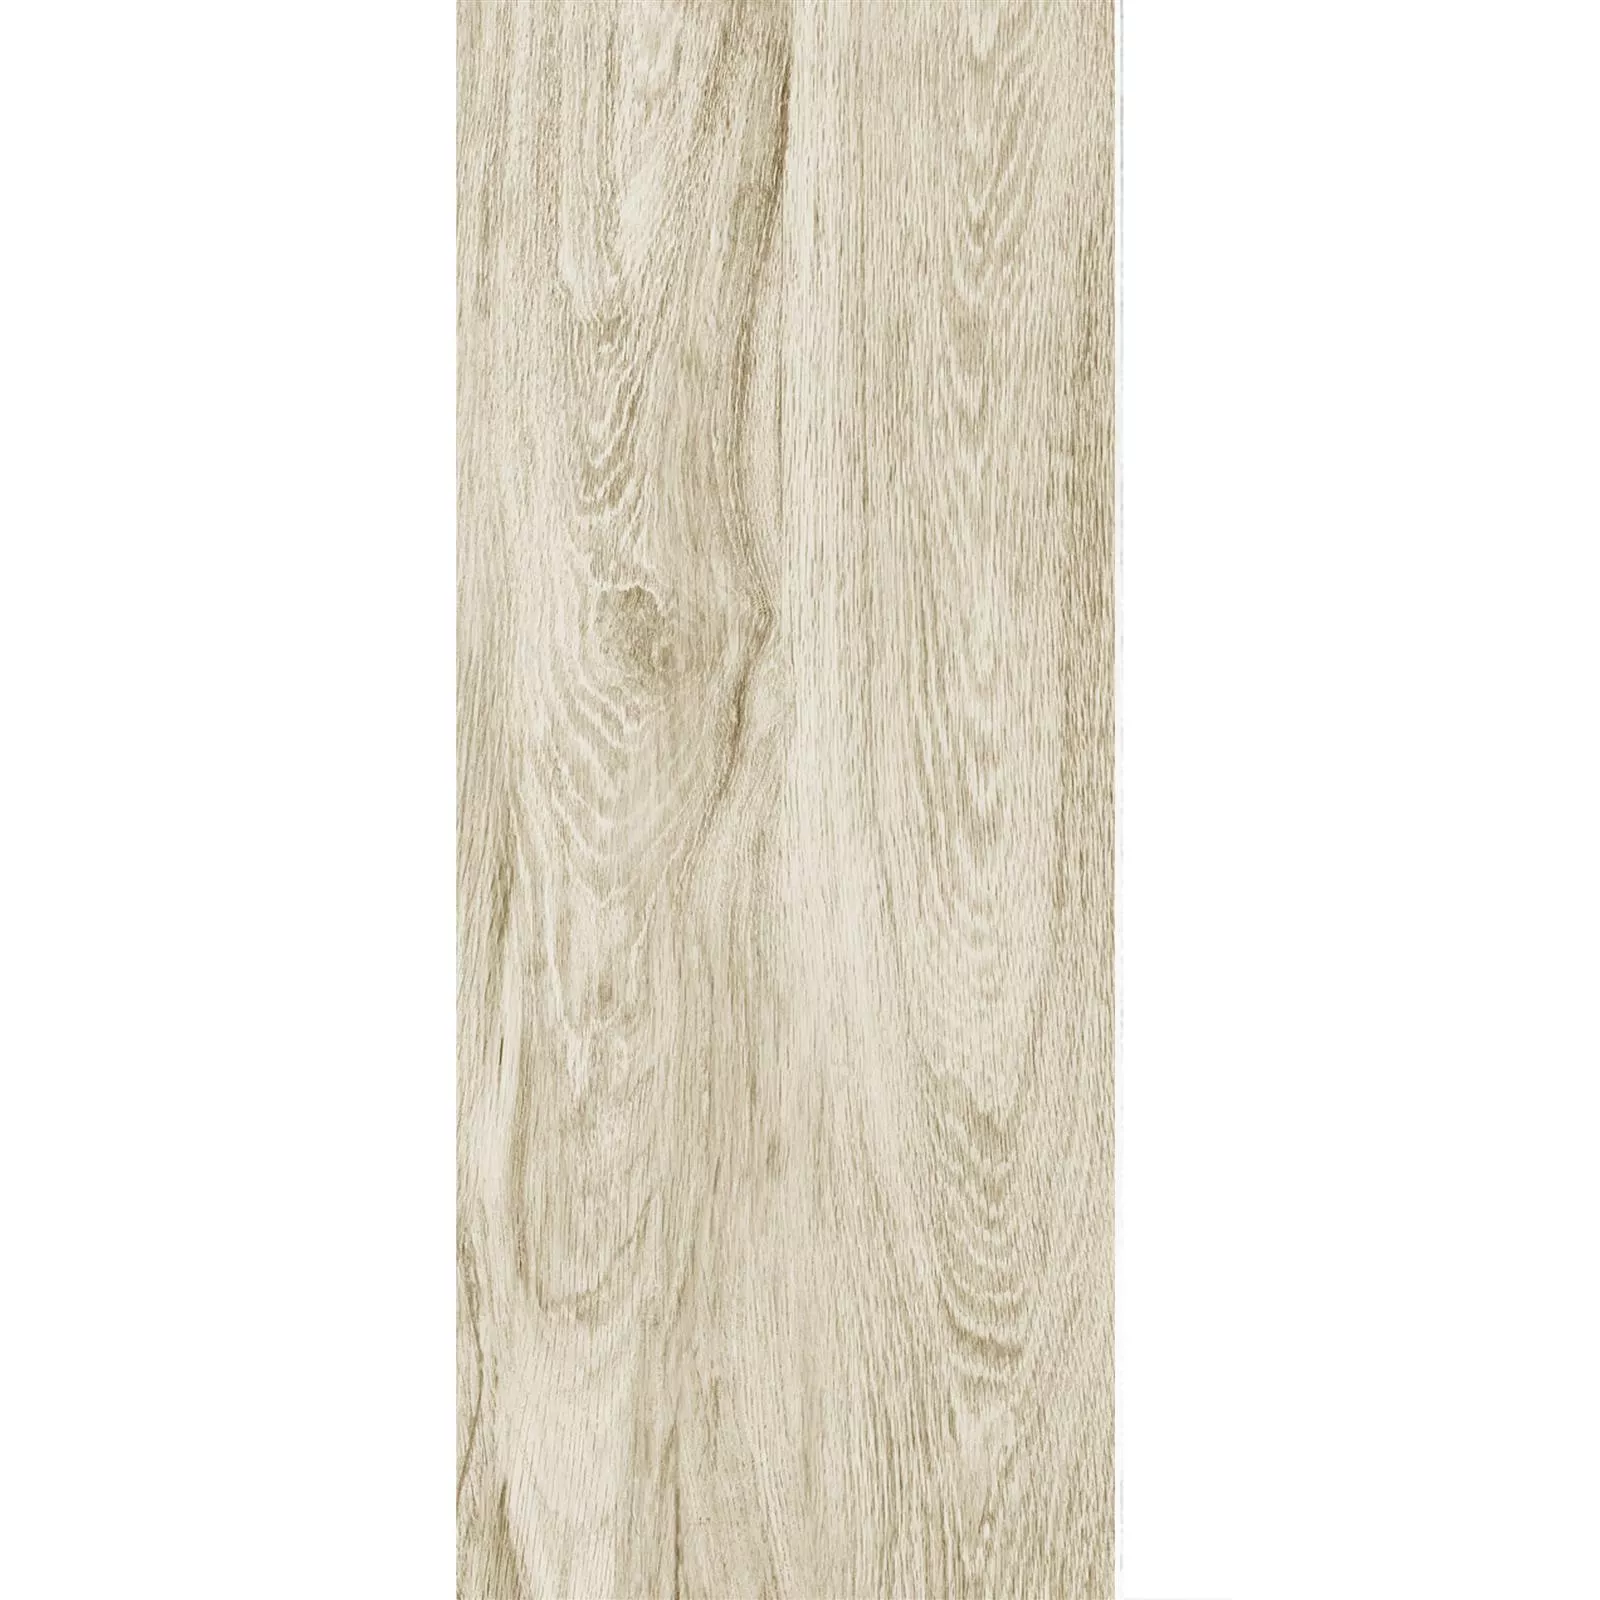 Próbka Taras Płyta Wygląd Drewna Strassburg Beżowy 30x120cm